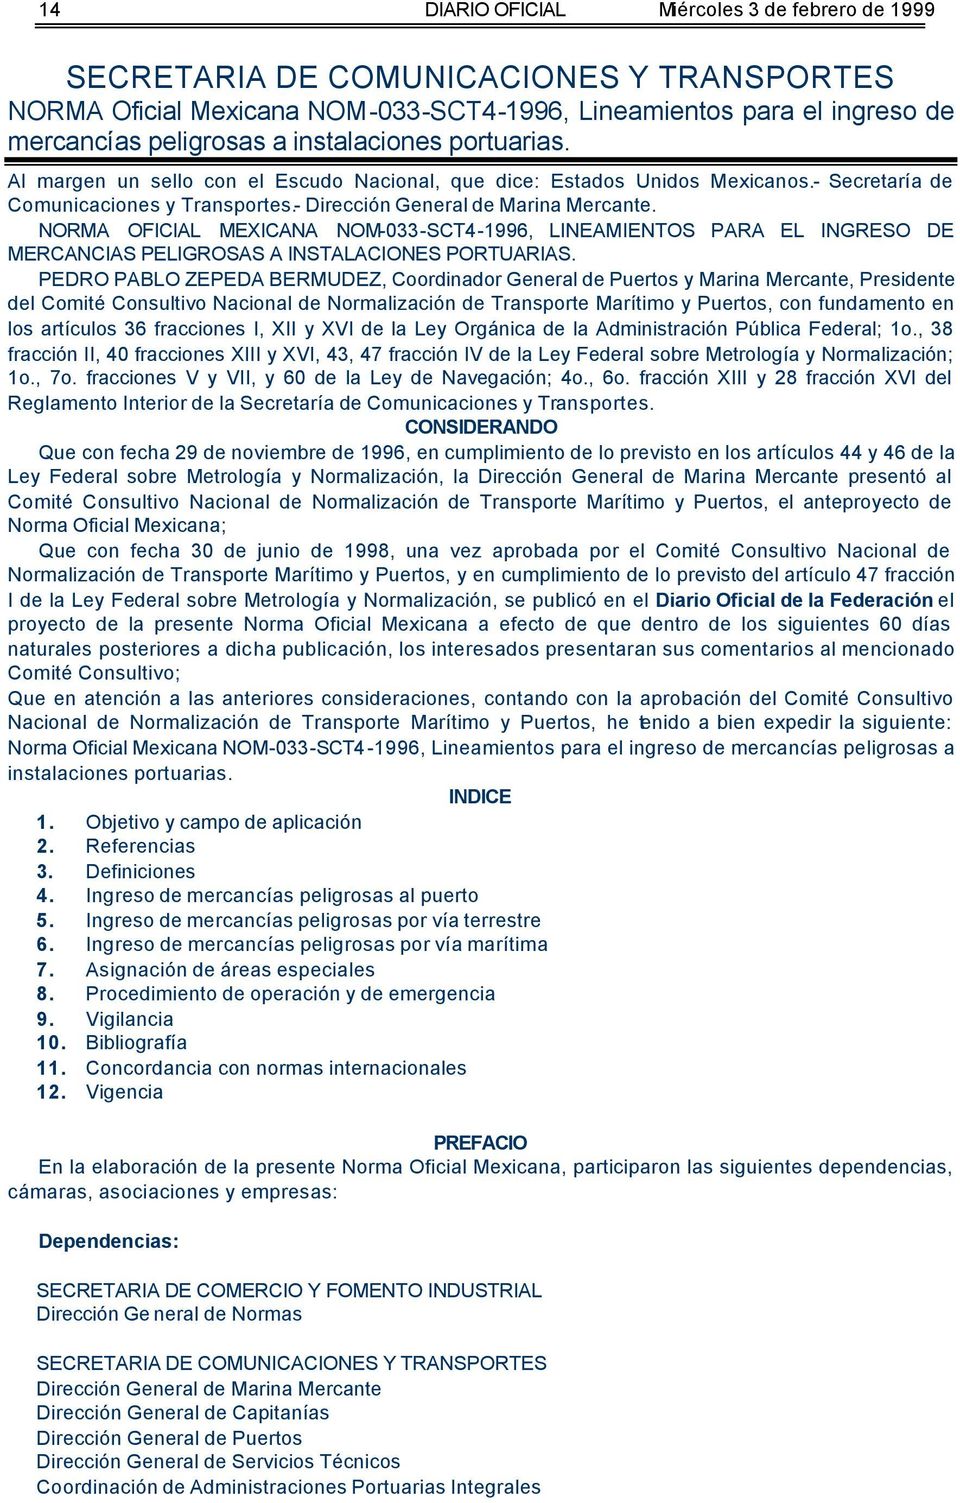 NORMA OFICIAL MEXICANA NOM-033-SCT4-1996, LINEAMIENTOS PARA EL INGRESO DE MERCANCIAS PELIGROSAS A INSTALACIONES PORTUARIAS.